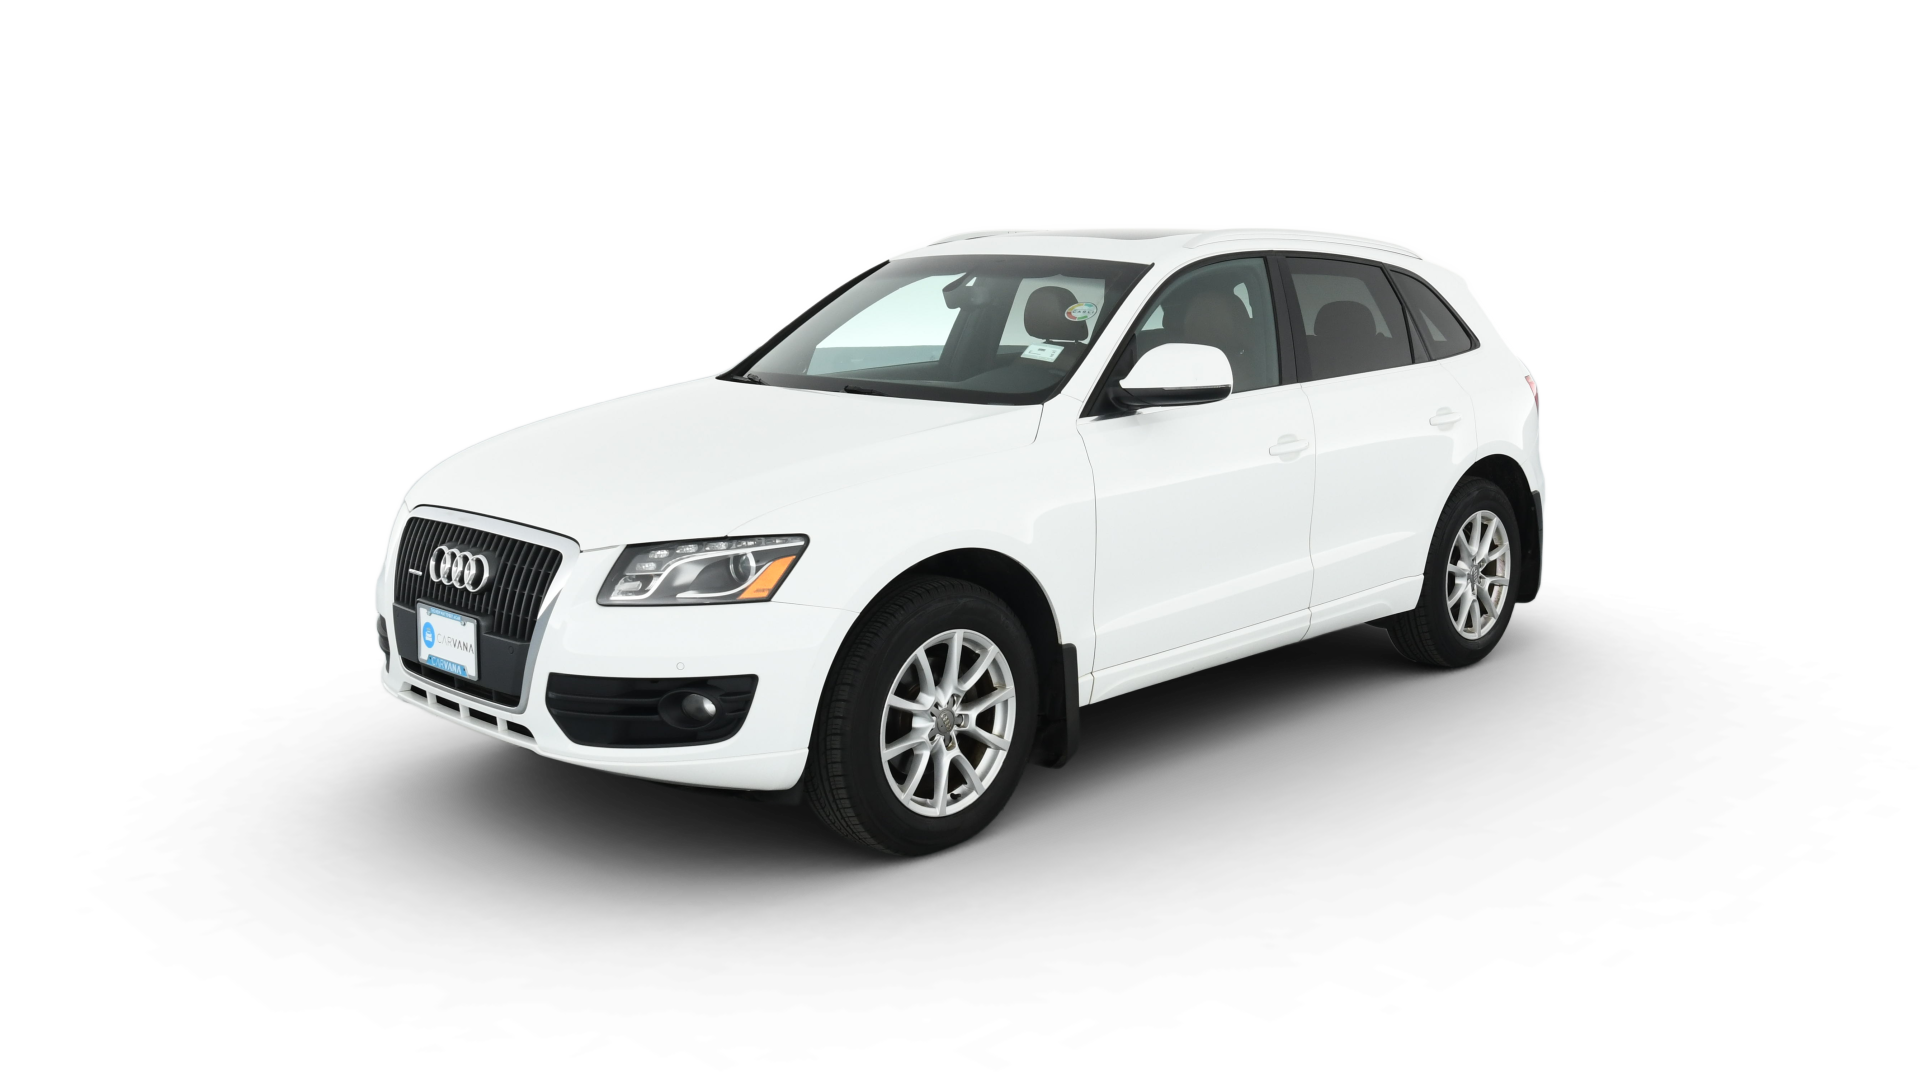 Audi Q5 model image.